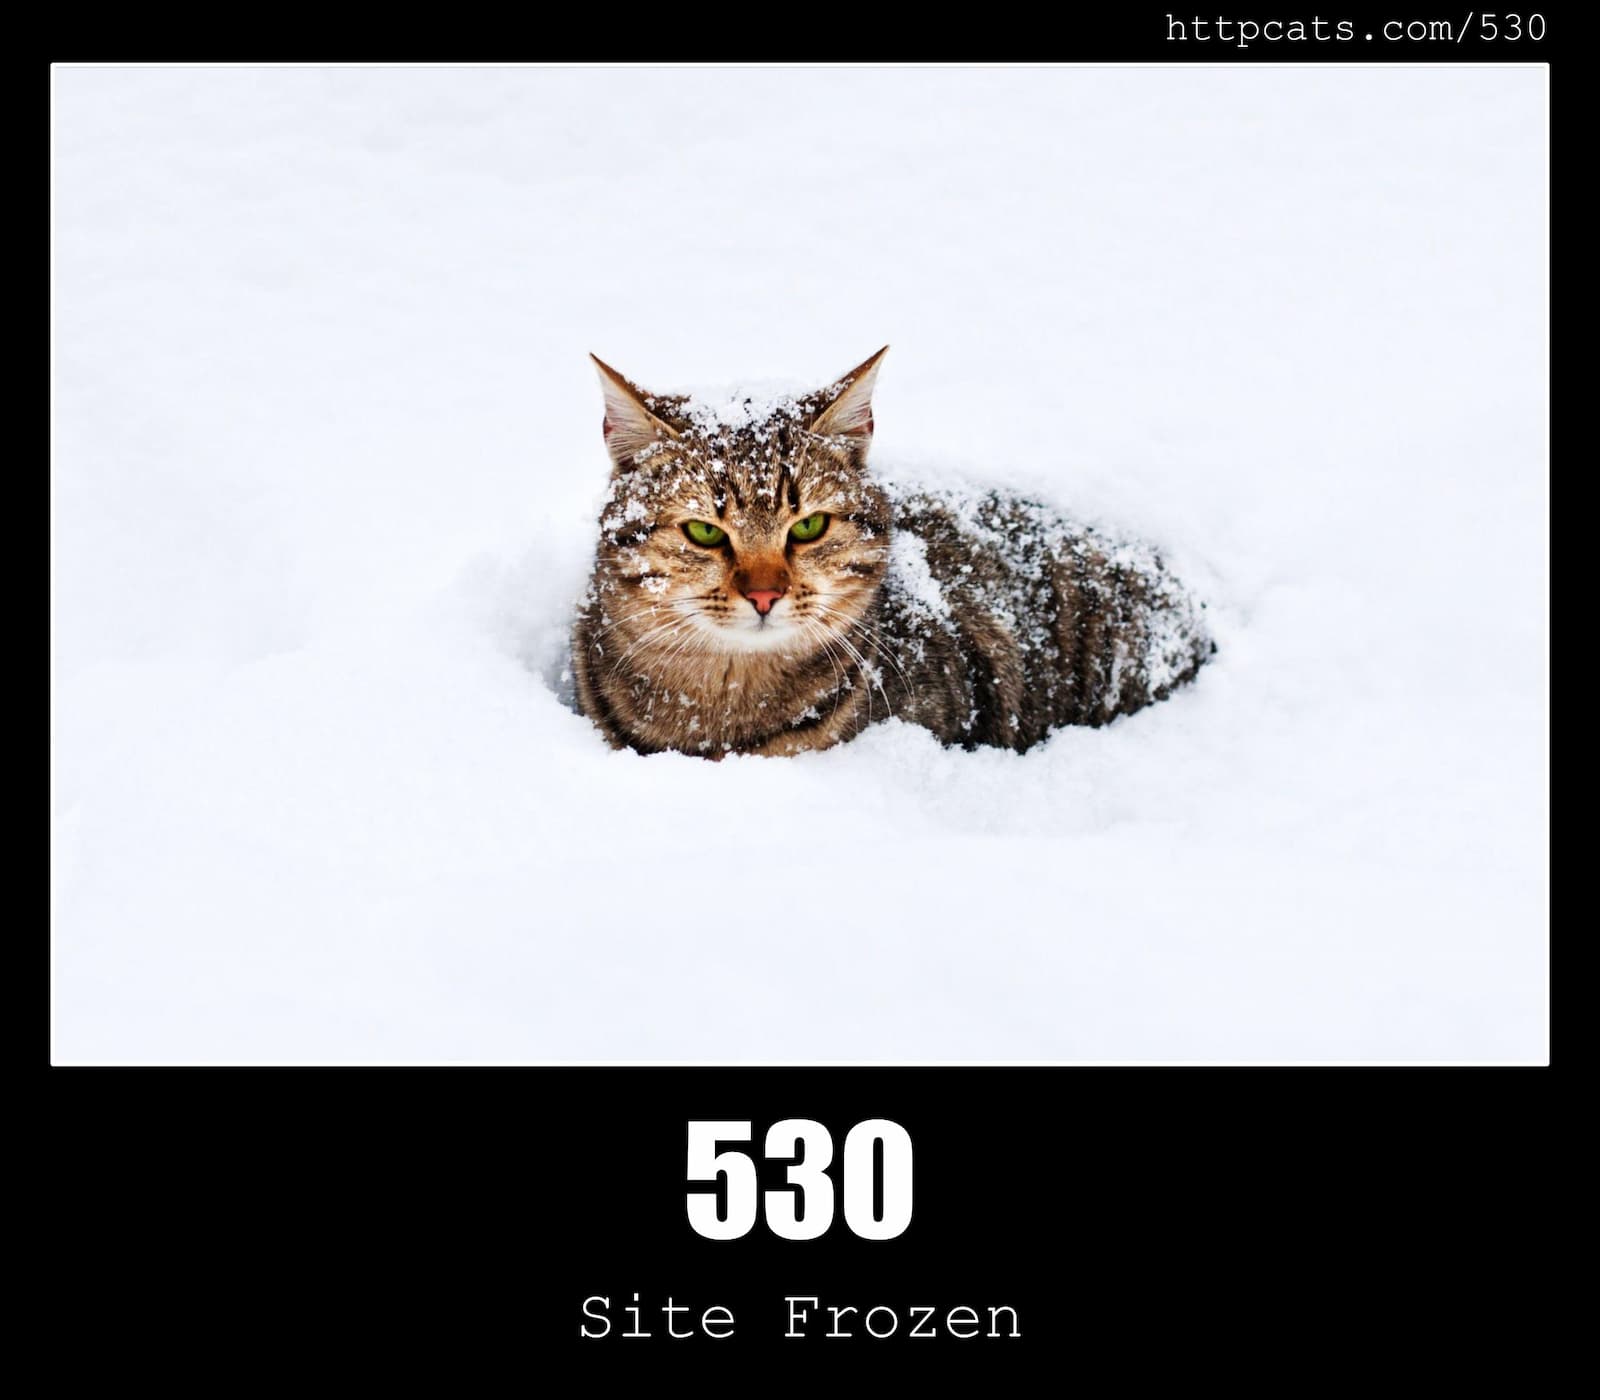 HTTP Status Code 530 Site Frozen & Cats